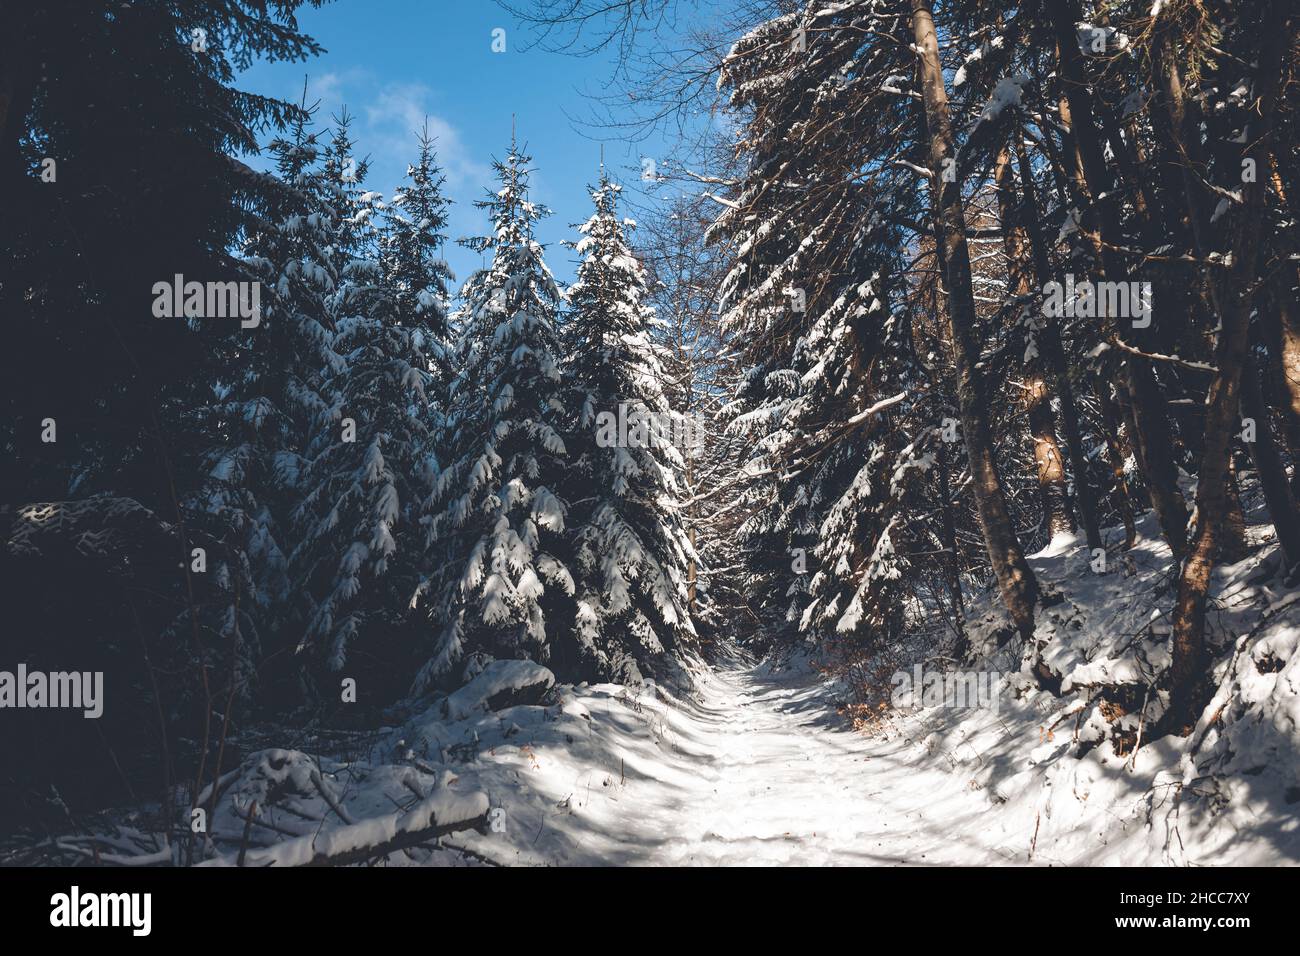 Plan vertical d'une forêt de pins couverts de neige dans une forêt enneigée par une belle journée d'hiver Banque D'Images